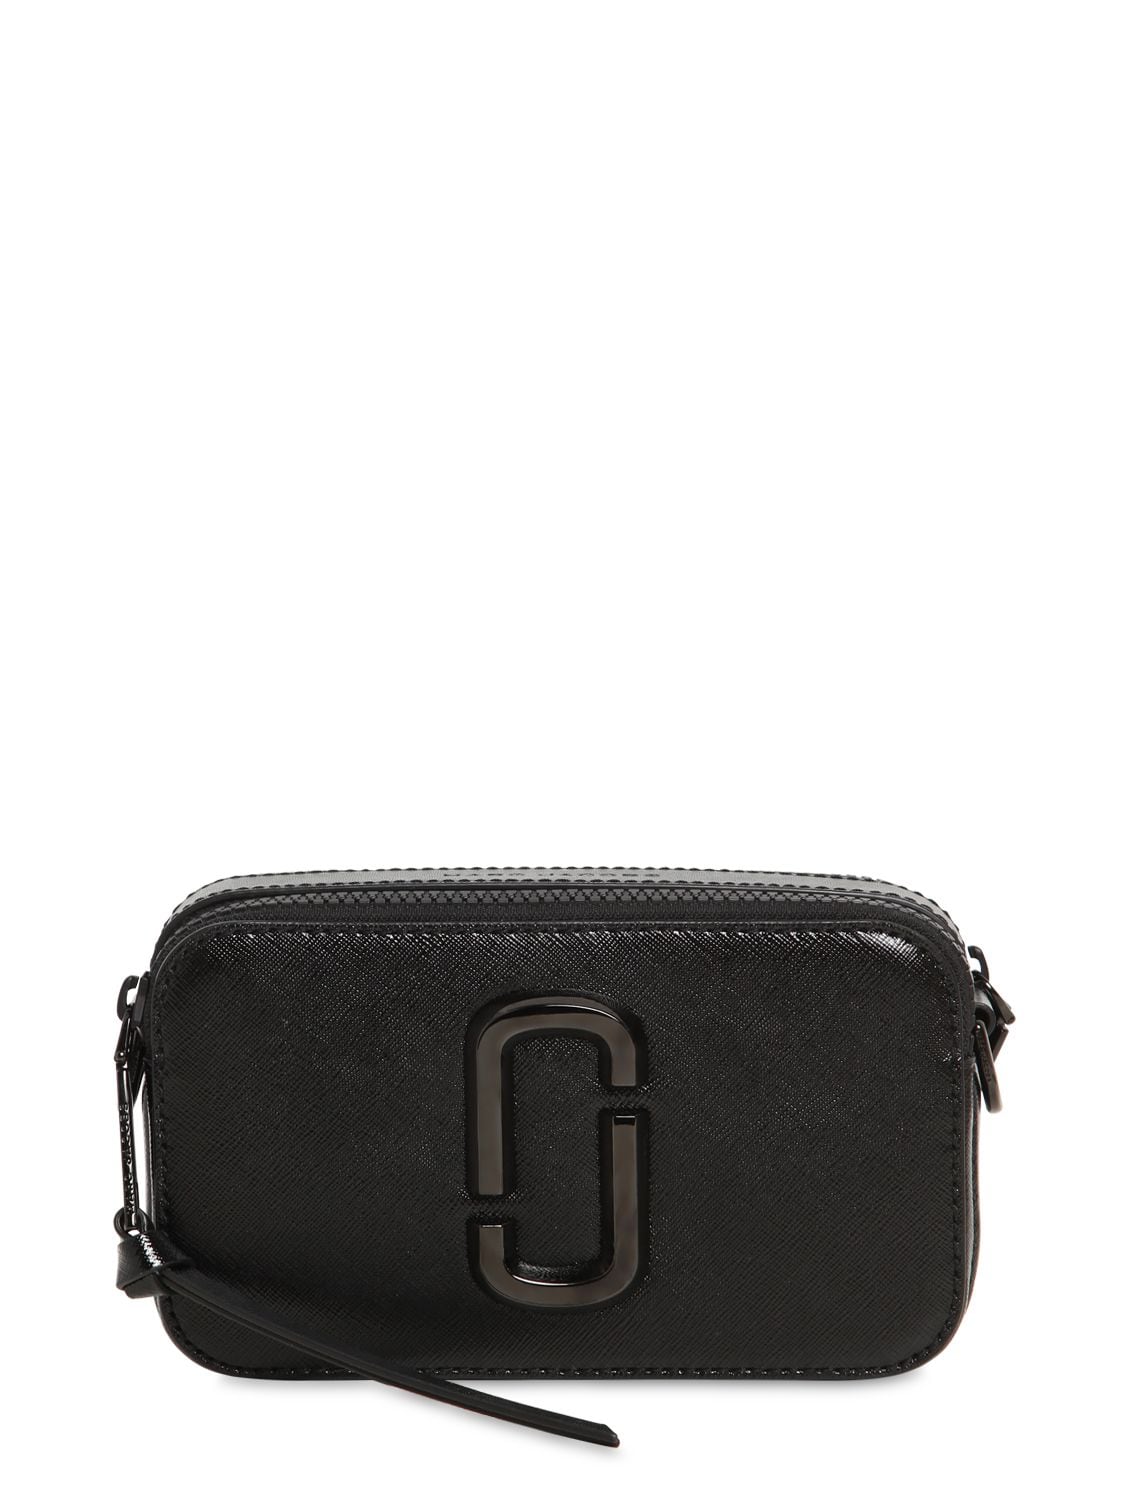 Marc Jacobs Black 'The Snapshot DTM' Shoulder Bag